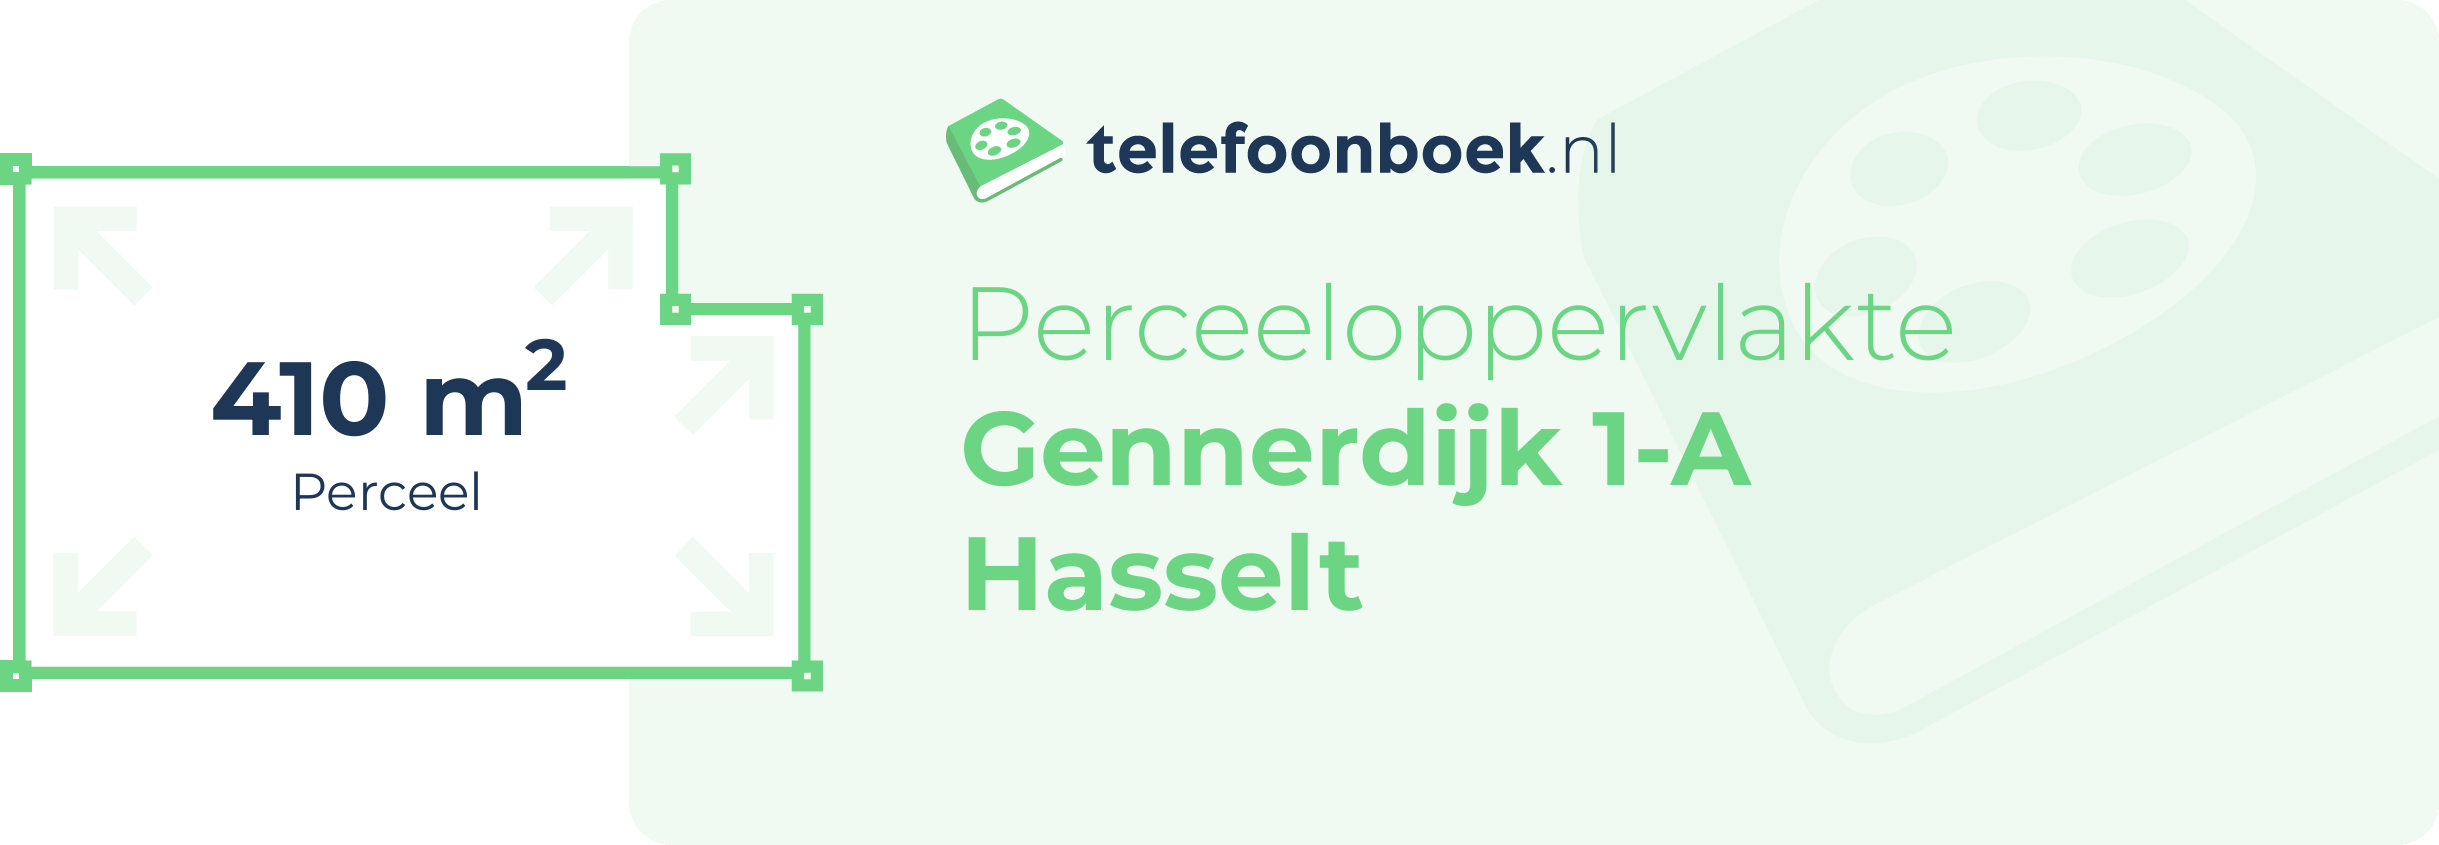 Perceeloppervlakte Gennerdijk 1-A Hasselt